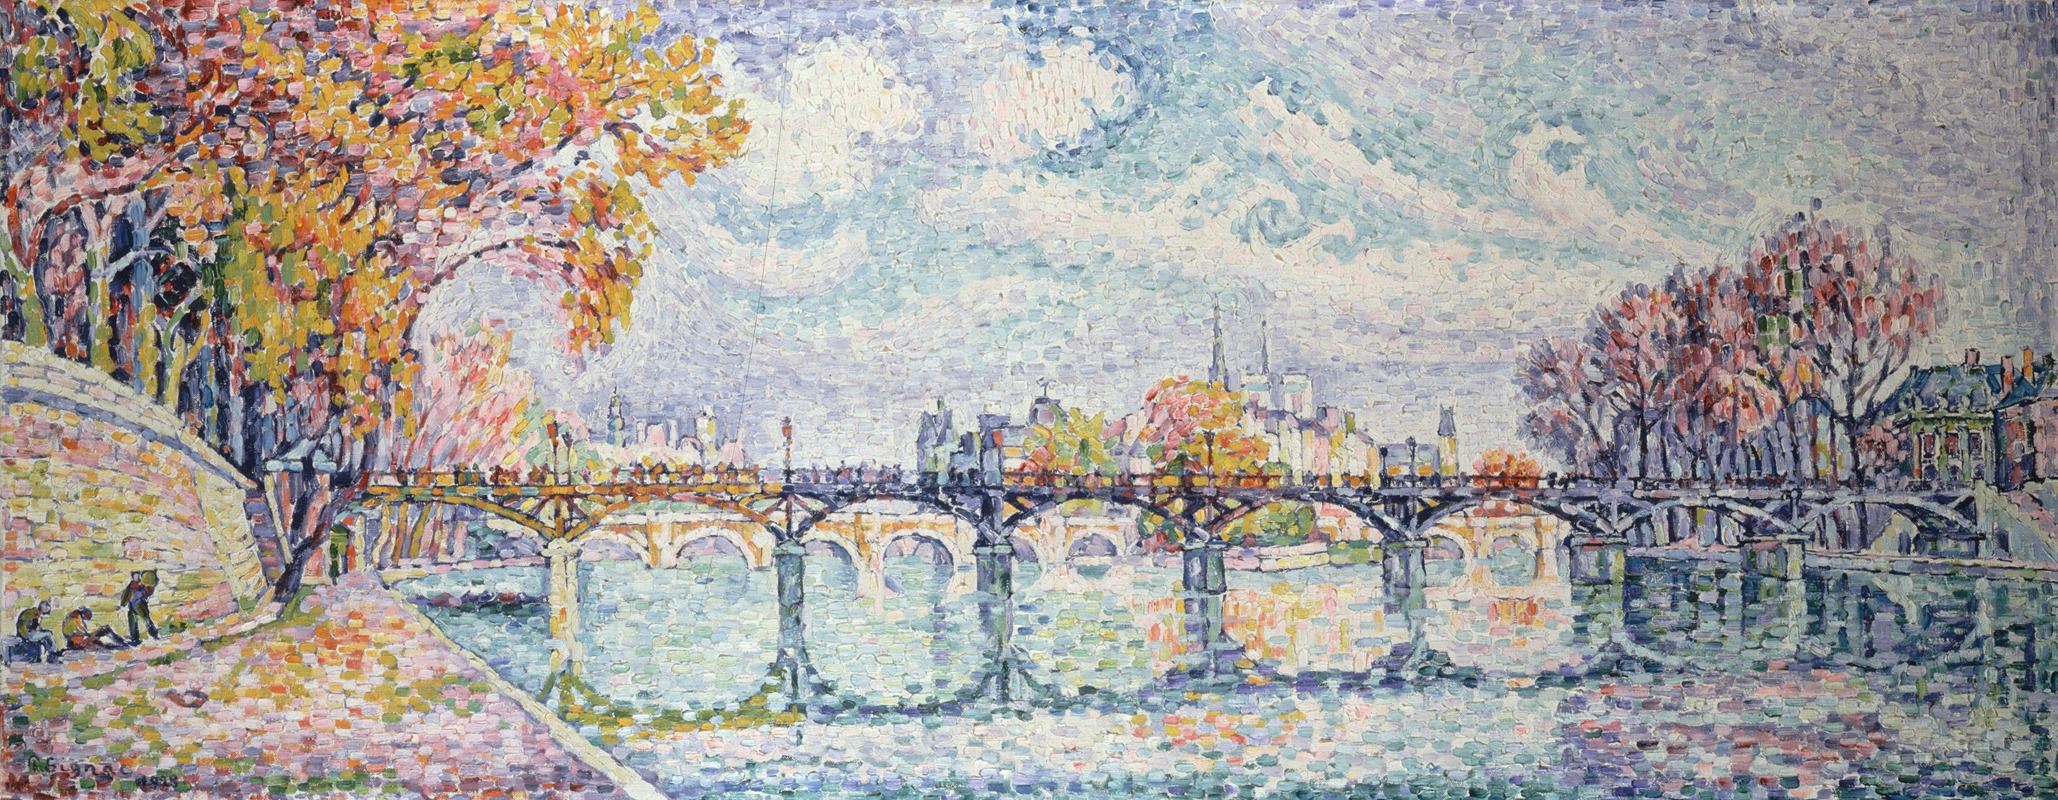 Paul Signac - Le pont des Arts